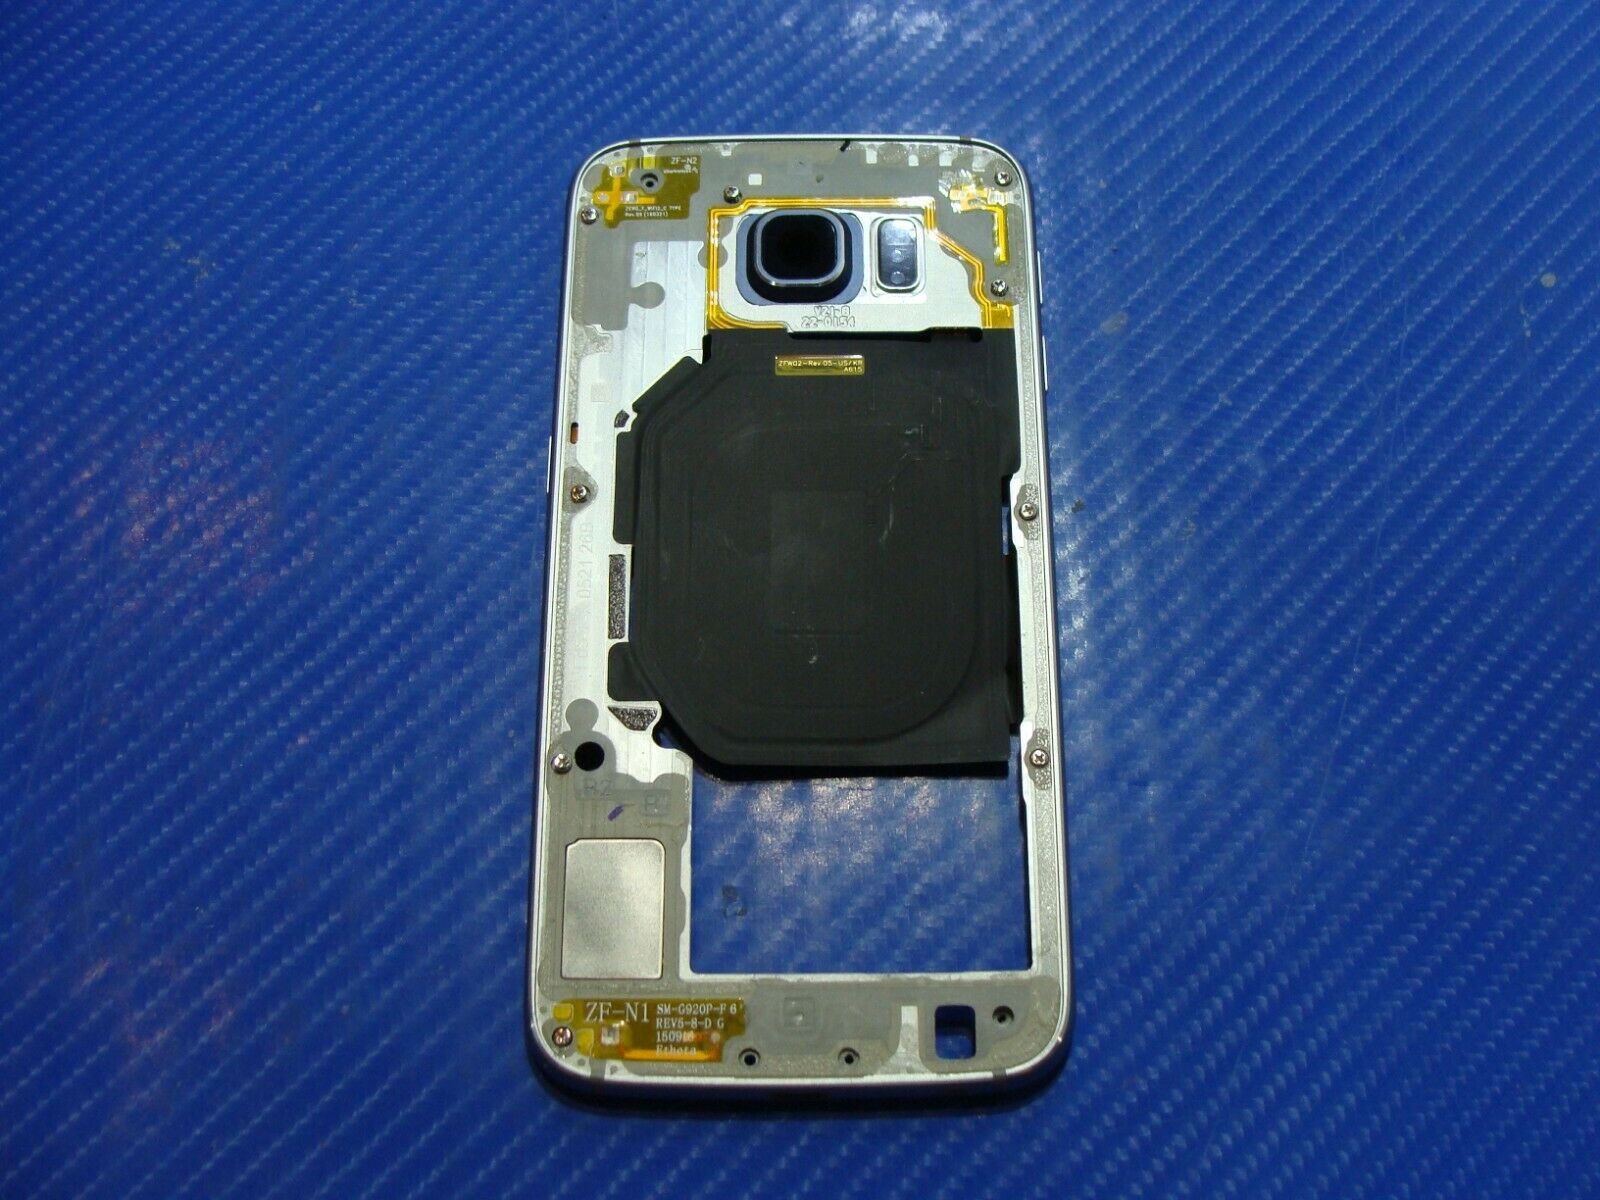 Samsung Galaxy S6 5.1